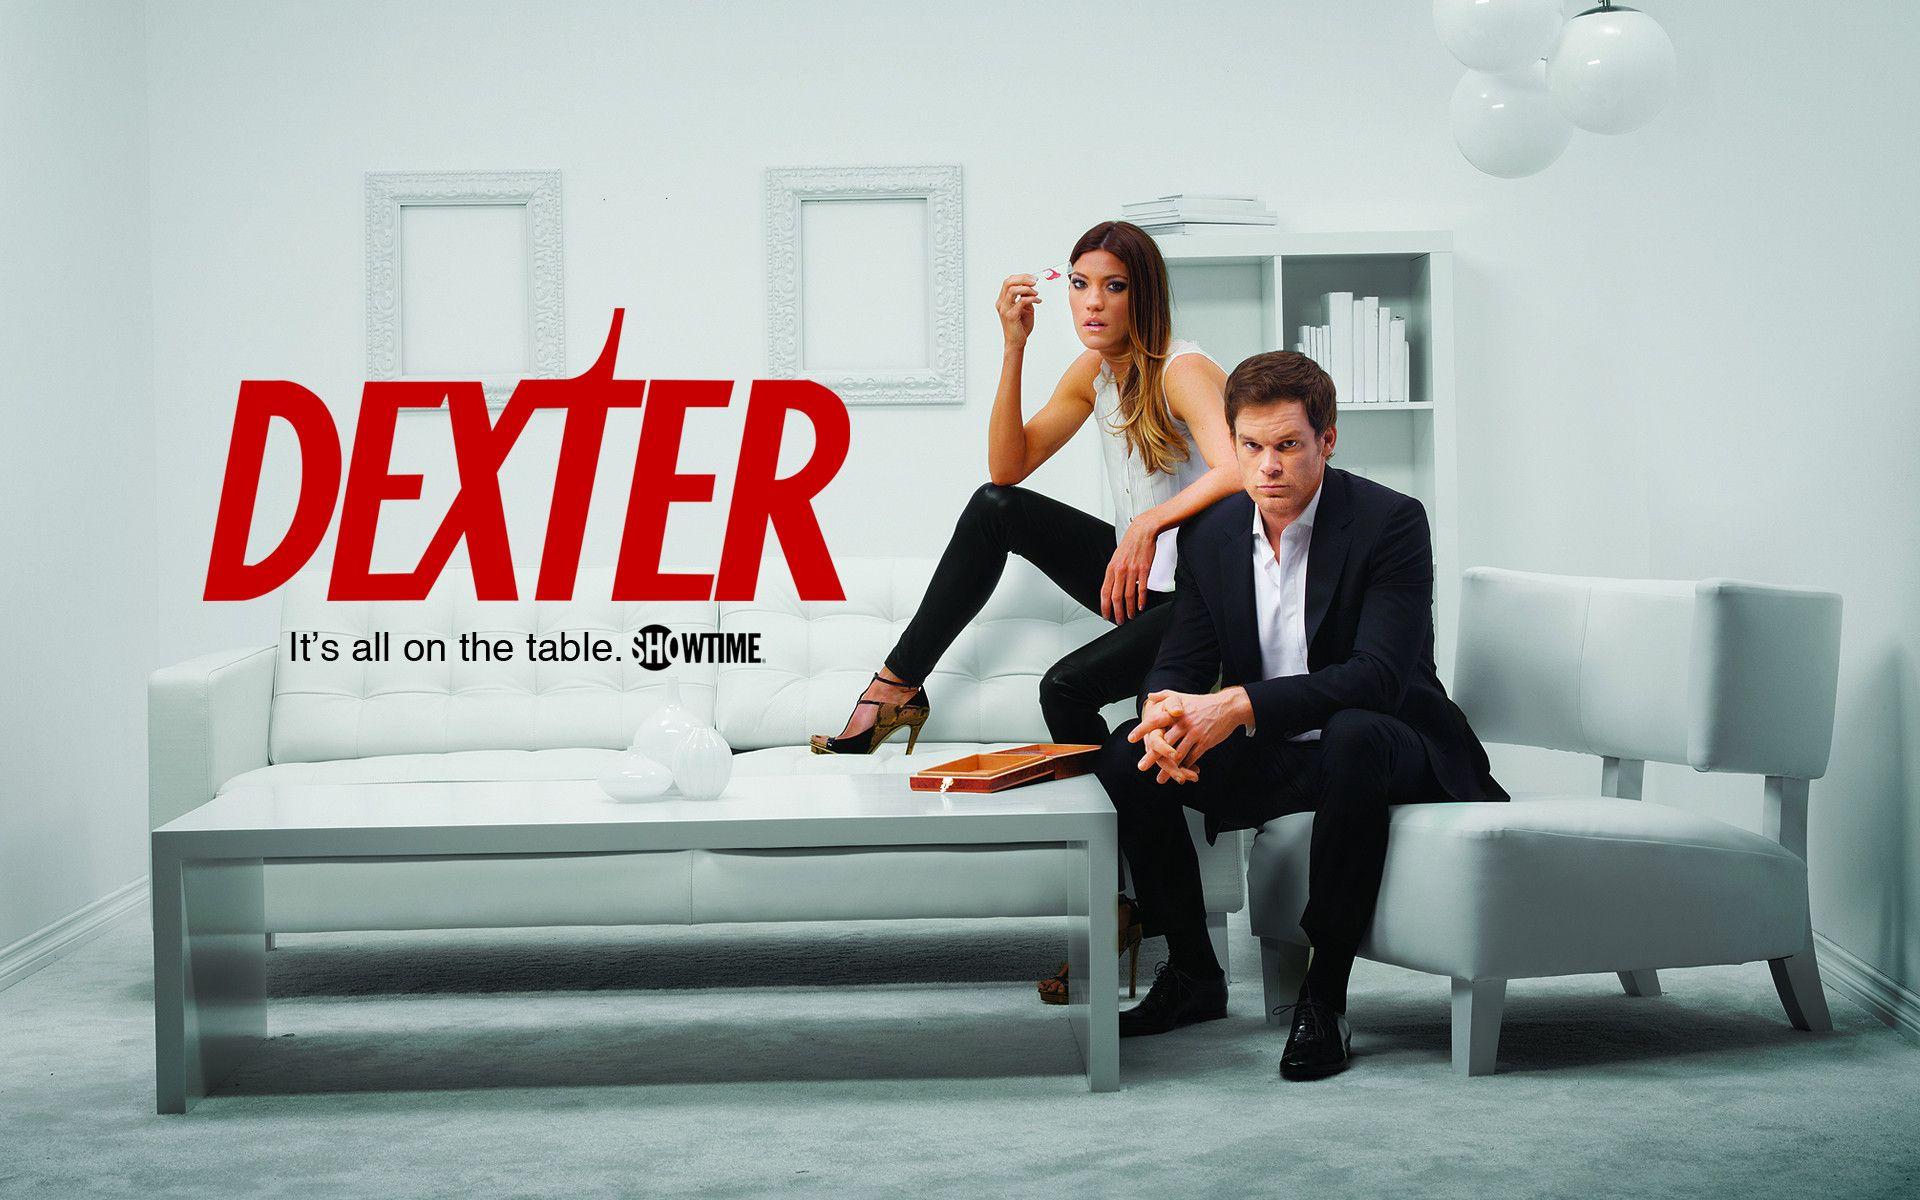 Dexter Season 7 Wallpaper HD 2